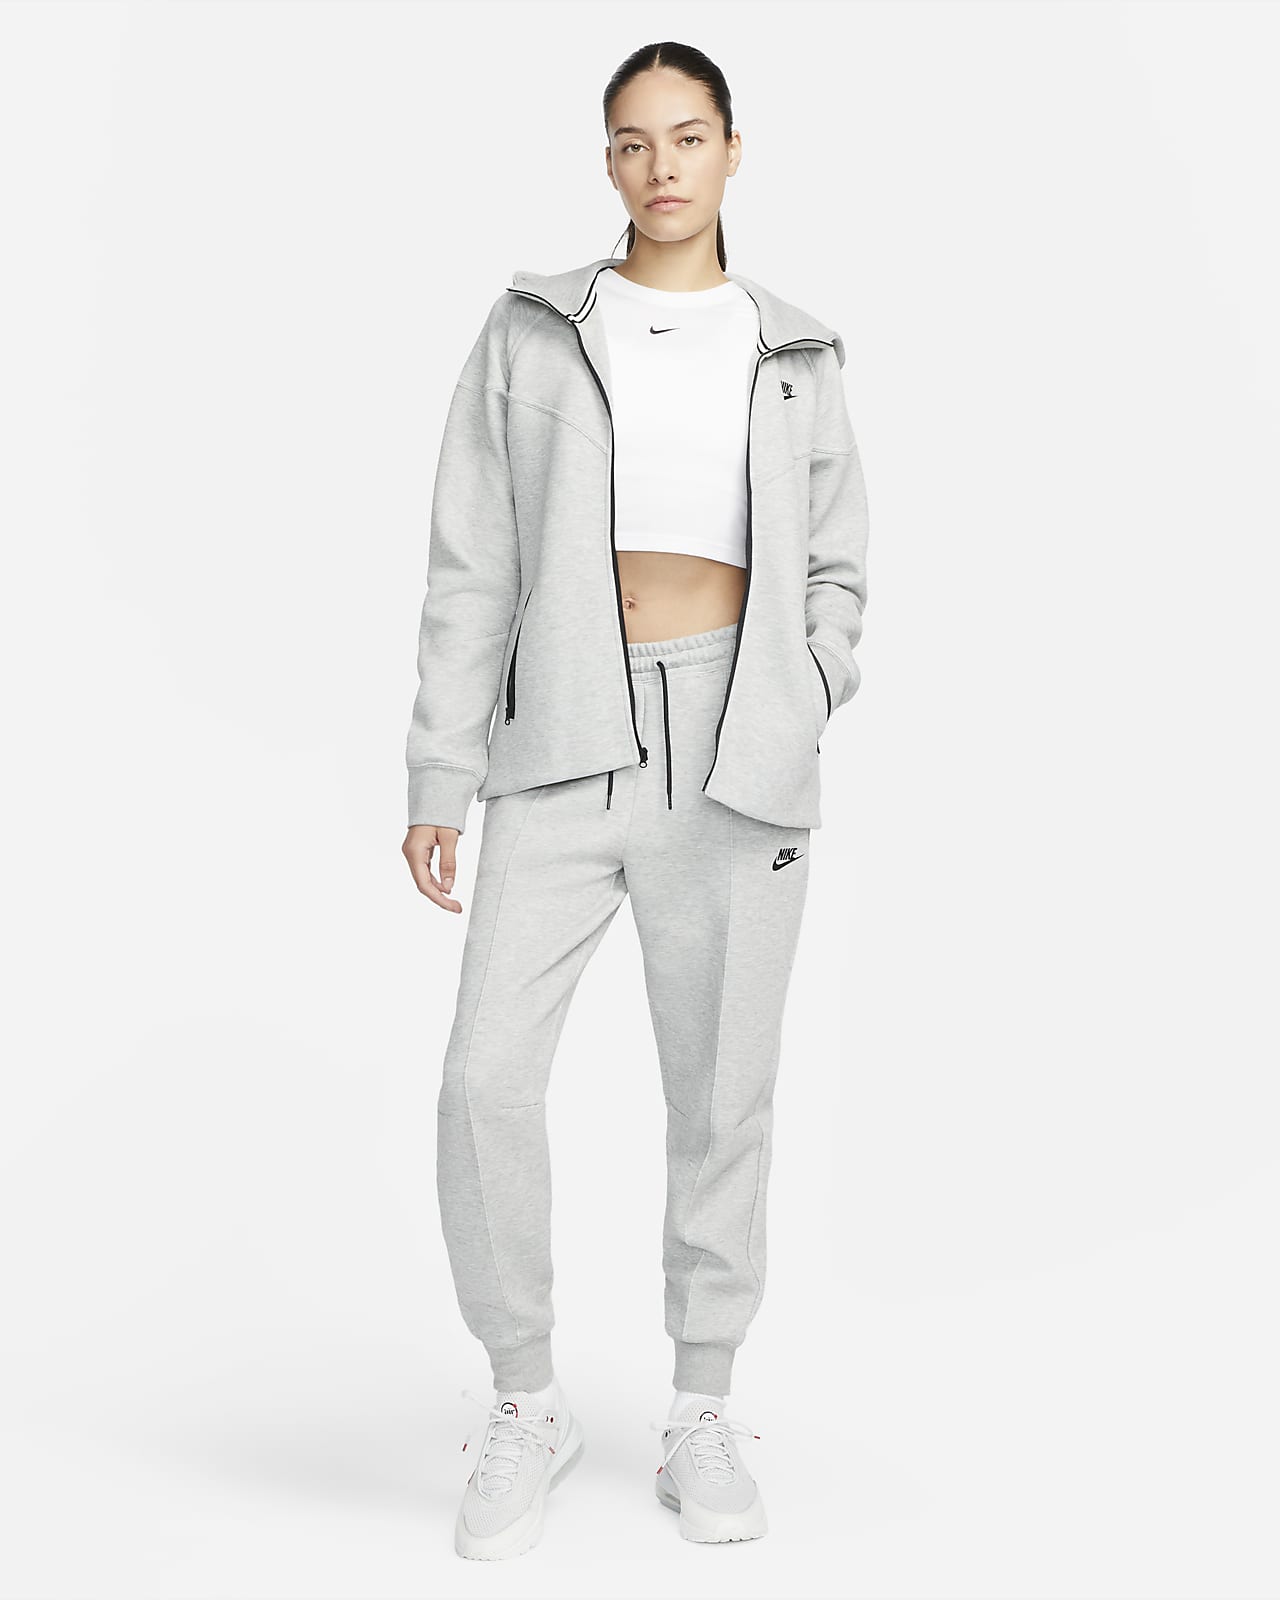 Nike Sportswear Women's Tech Fleece Pants / Dark Grey Heather